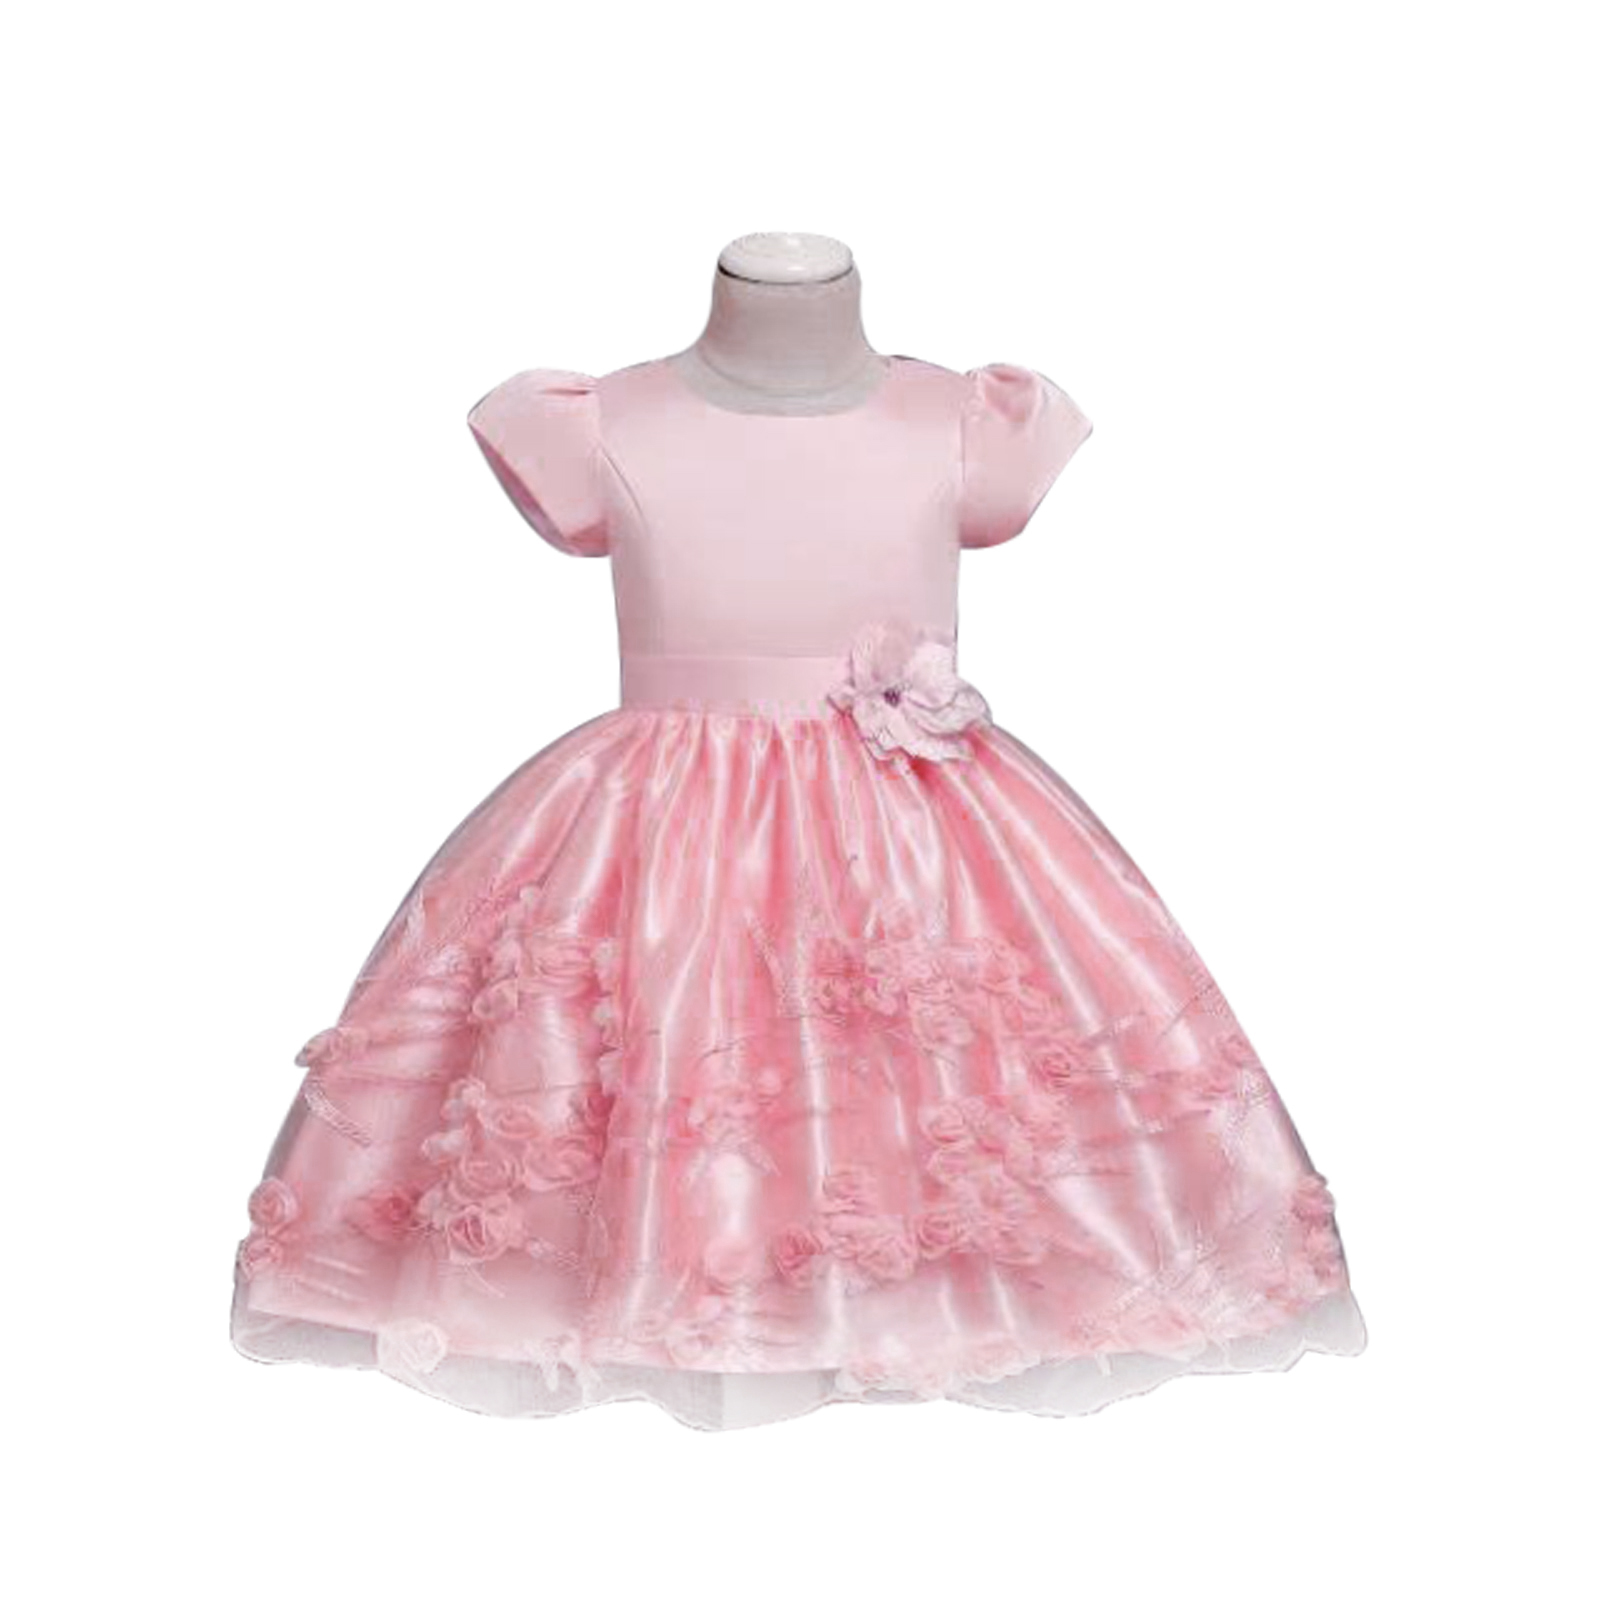 Pink Princess Party Dress 2-7 OUT OF STOCK | BLUESKYKIDSLAND